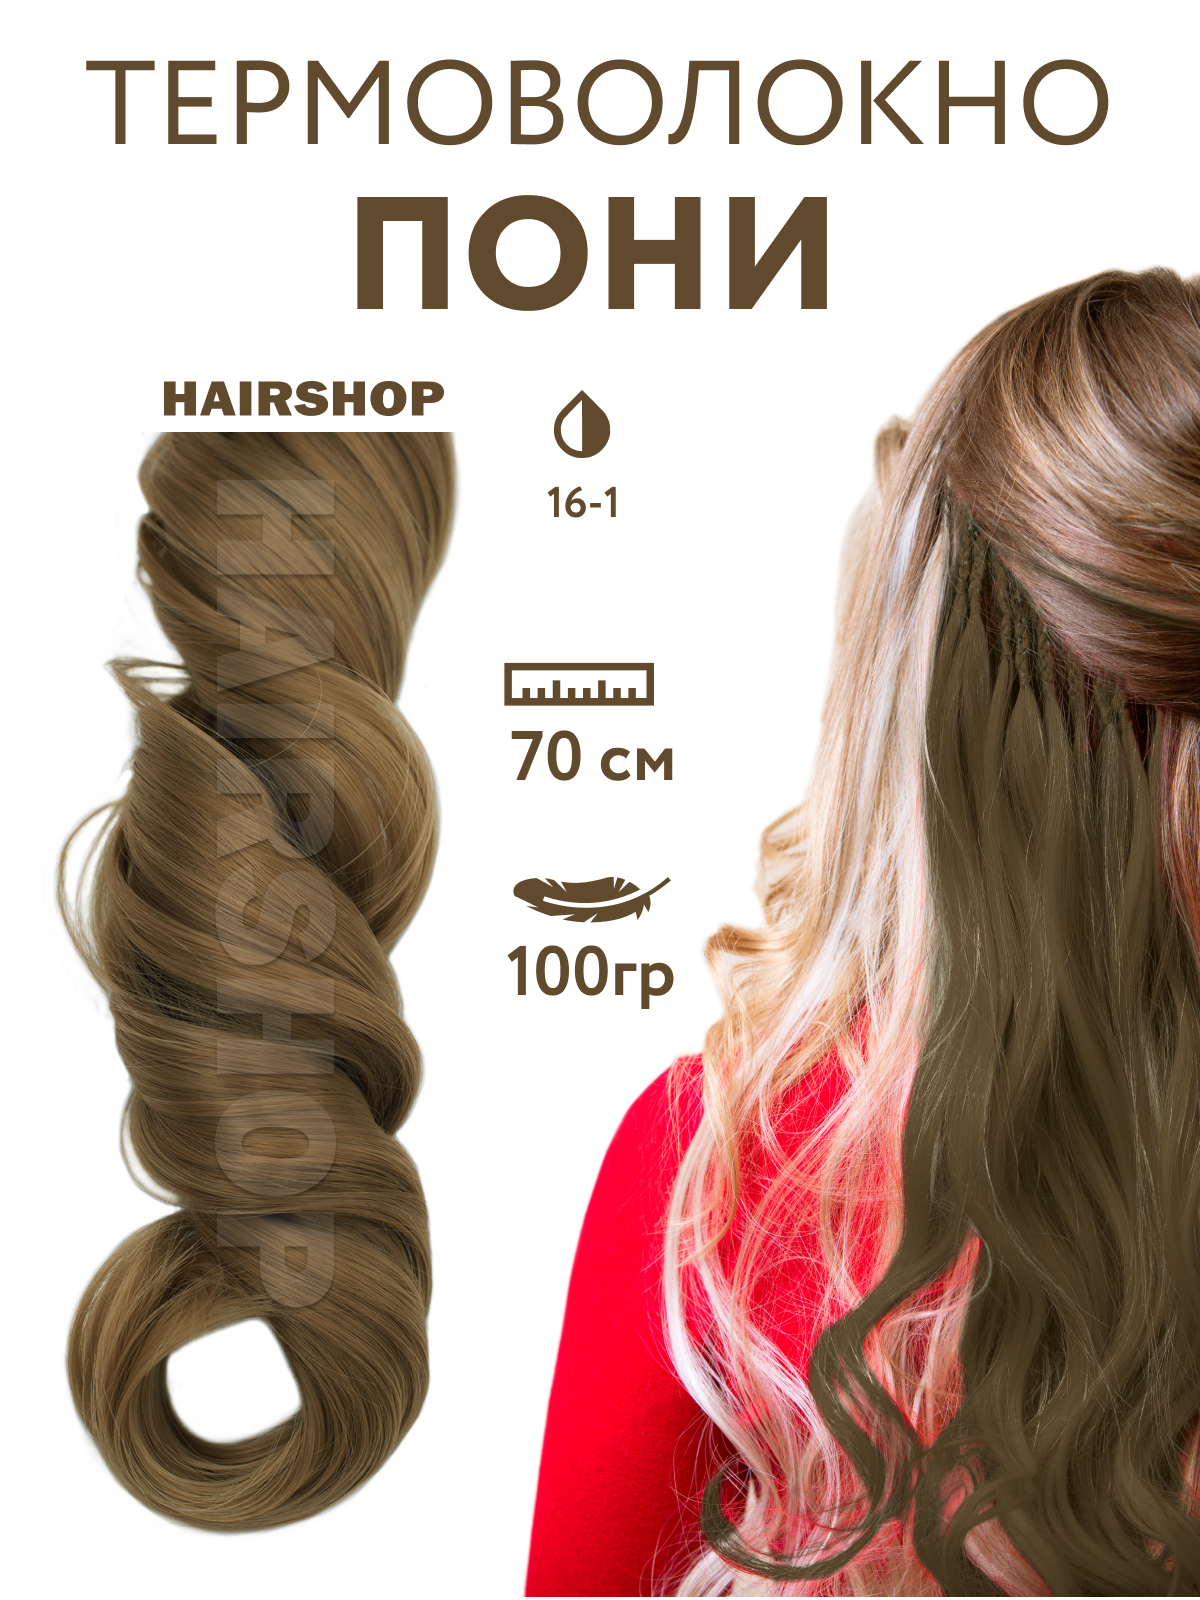 Канекалон Hairshop Пони HairUp для точечного афронаращивания 16-1 Пепельно-русый 1,4м канекалон hairshop пони hairup для точечного афронаращивания осенний листопад 1 4м